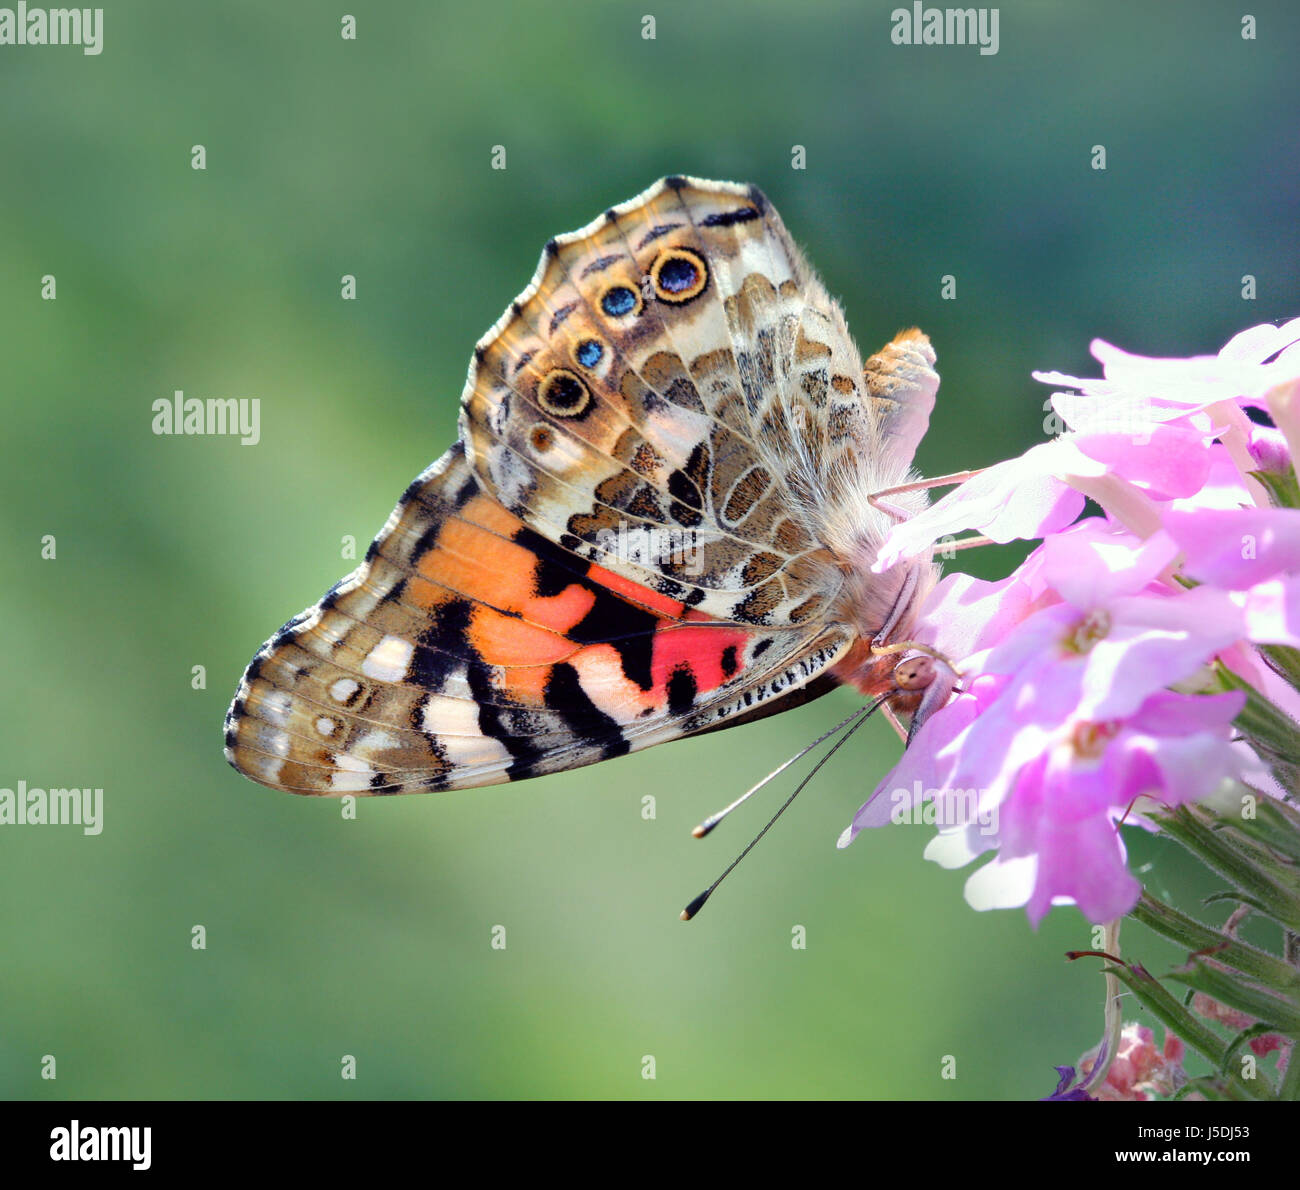 Animali farfalla insetto moth natura distelfalter edelfalter vanessa vanessa Foto Stock